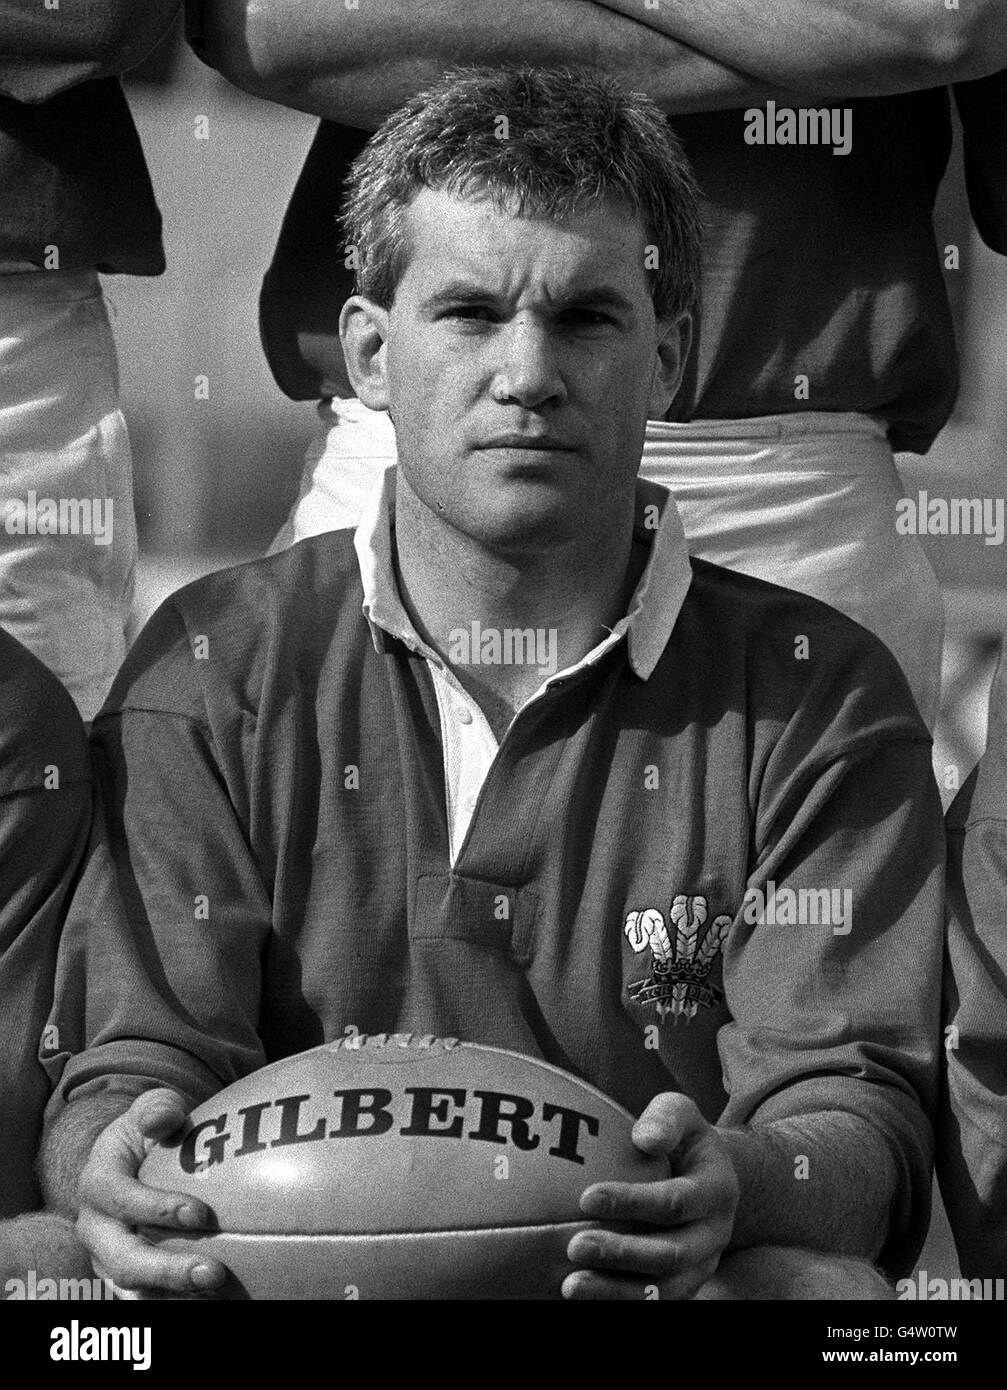 Wales Rugby Union Team Kapitän und Pontypool Spieler, Eddie Butler, 26, von Newport. Studierte in Monmouth und Cambridge University, wo er gewann drei Blues zwischen 1976 und 1978. Stockfoto